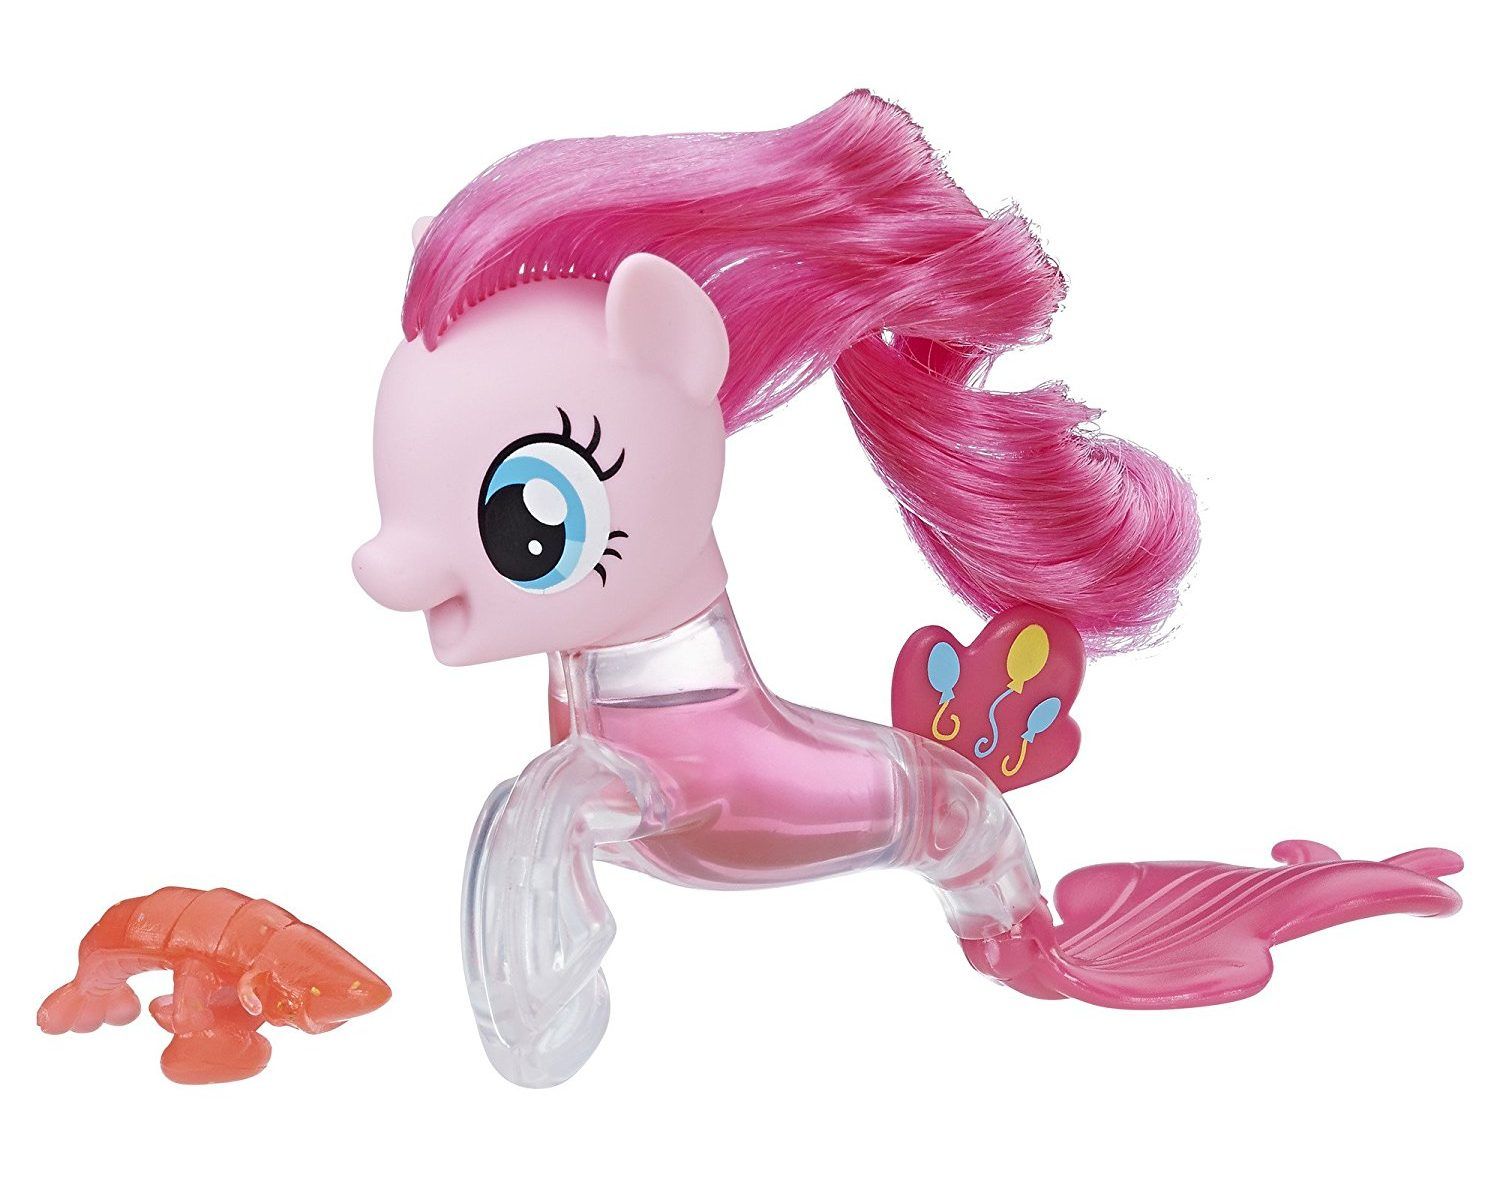 Новые игрушки литл пони. My little Pony Toys Пинки Пай. Пинки Пай Хасбро. Игрушка Hasbro MLP фигурки "пони-подружки". Пони Хасбро Пинки Пай.